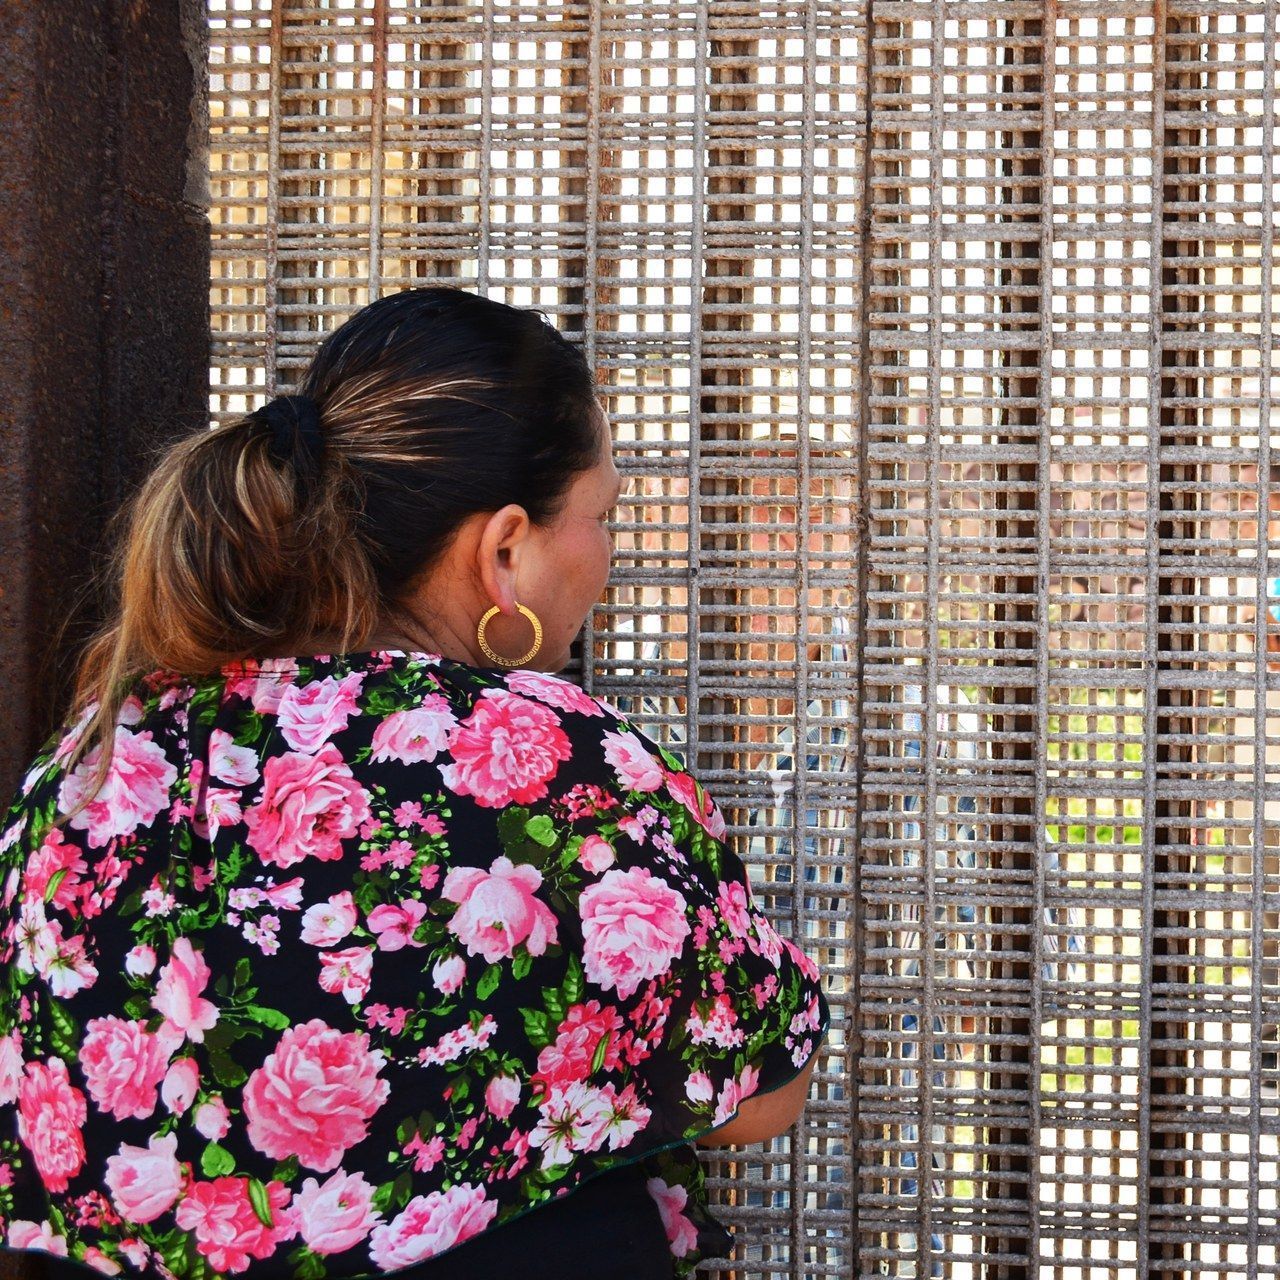 ا woman talks to her relatives across the fence separating